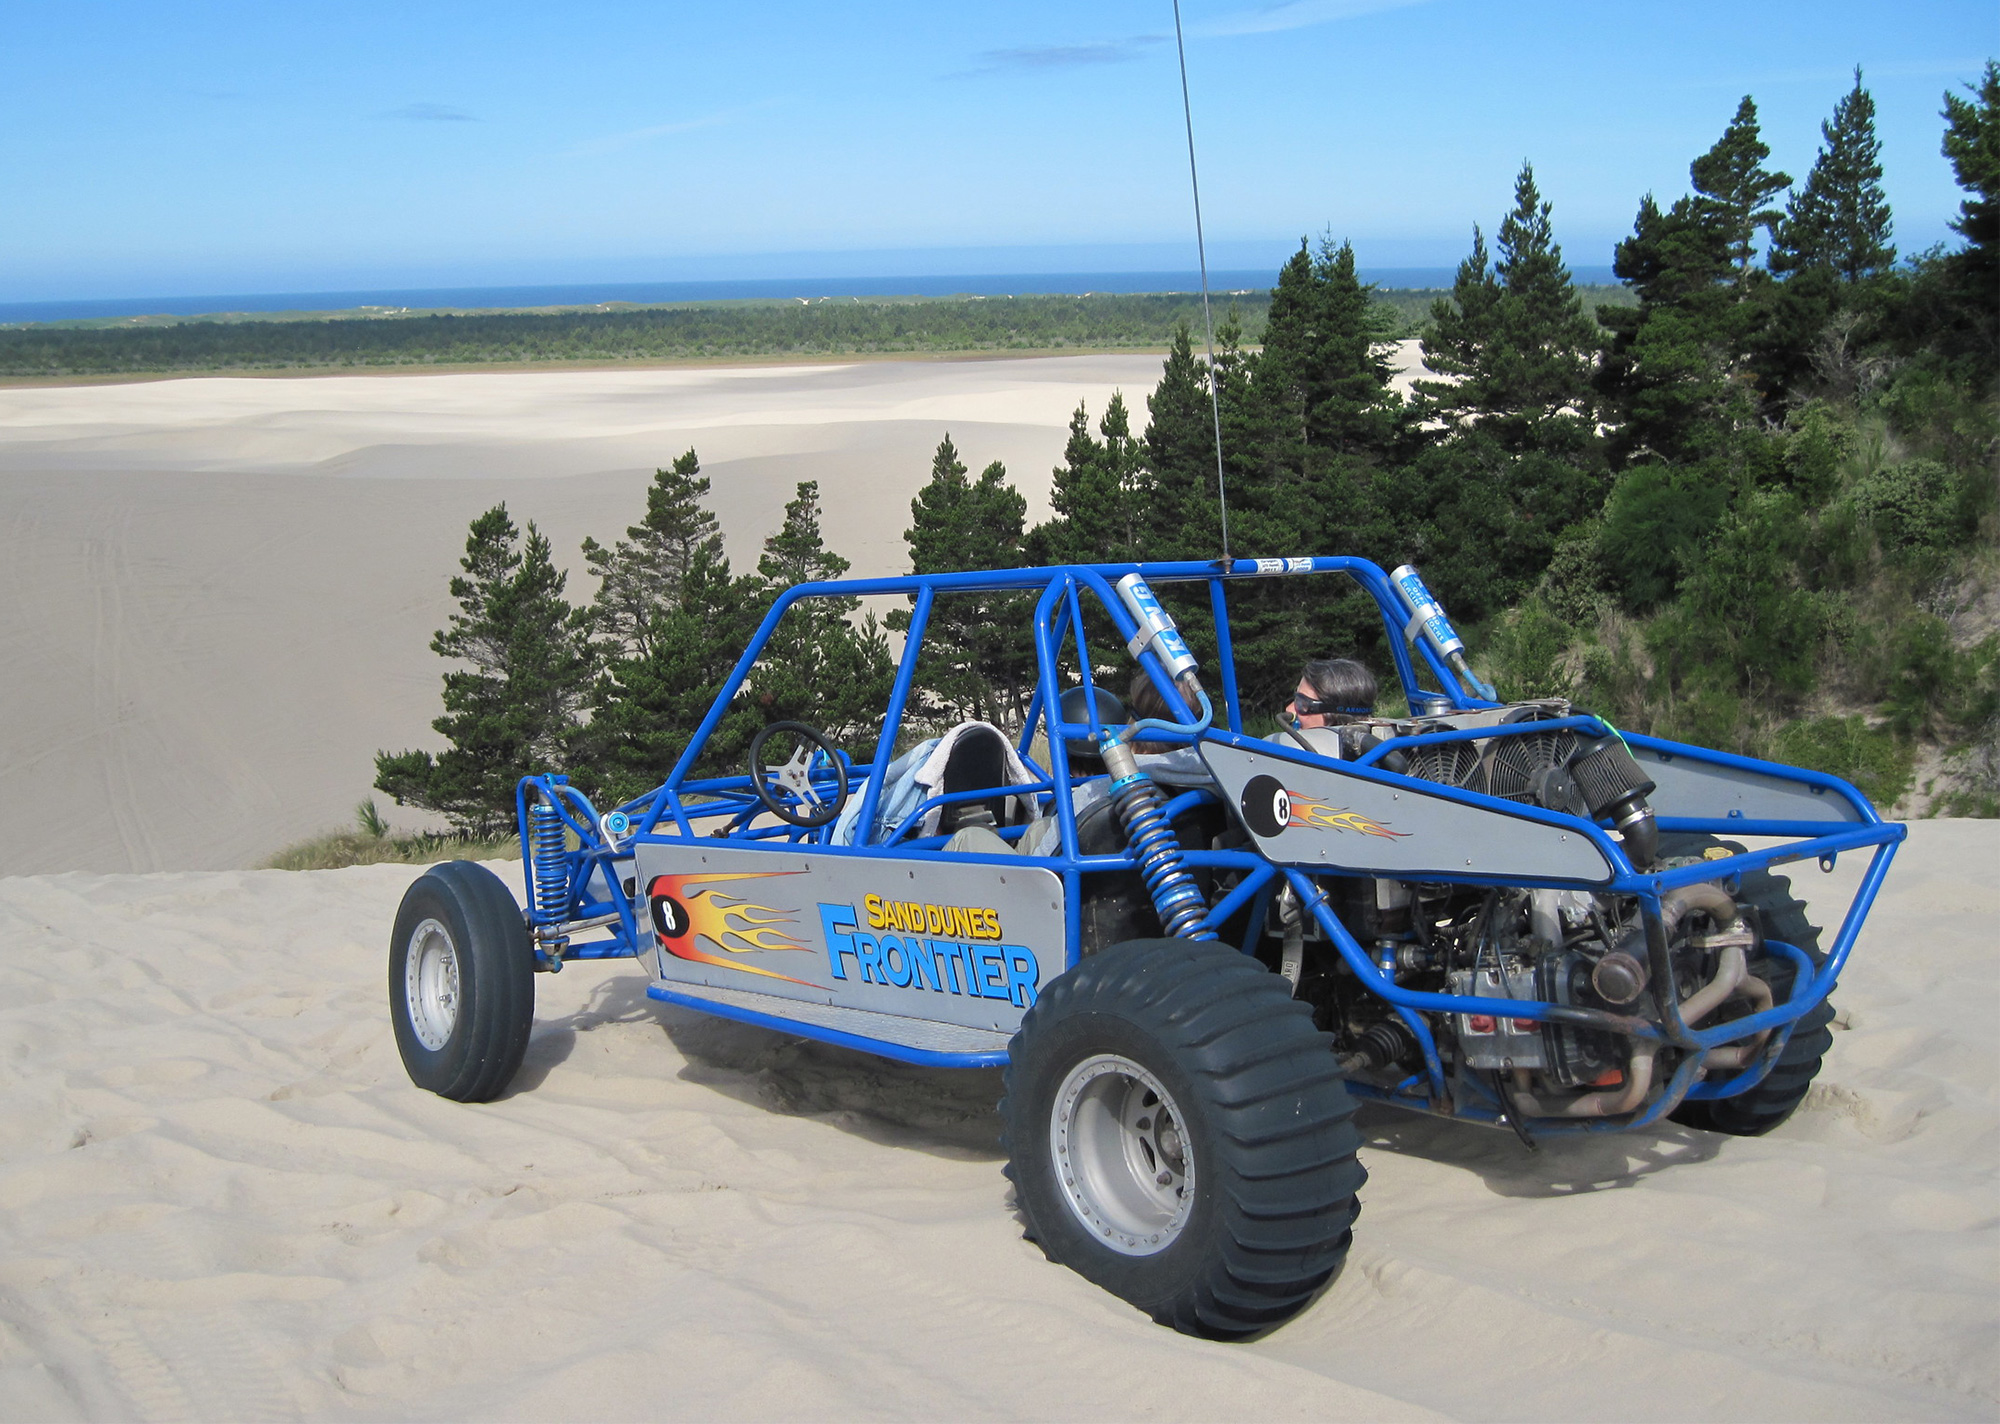 Sand Dunes Frontier dune buggy